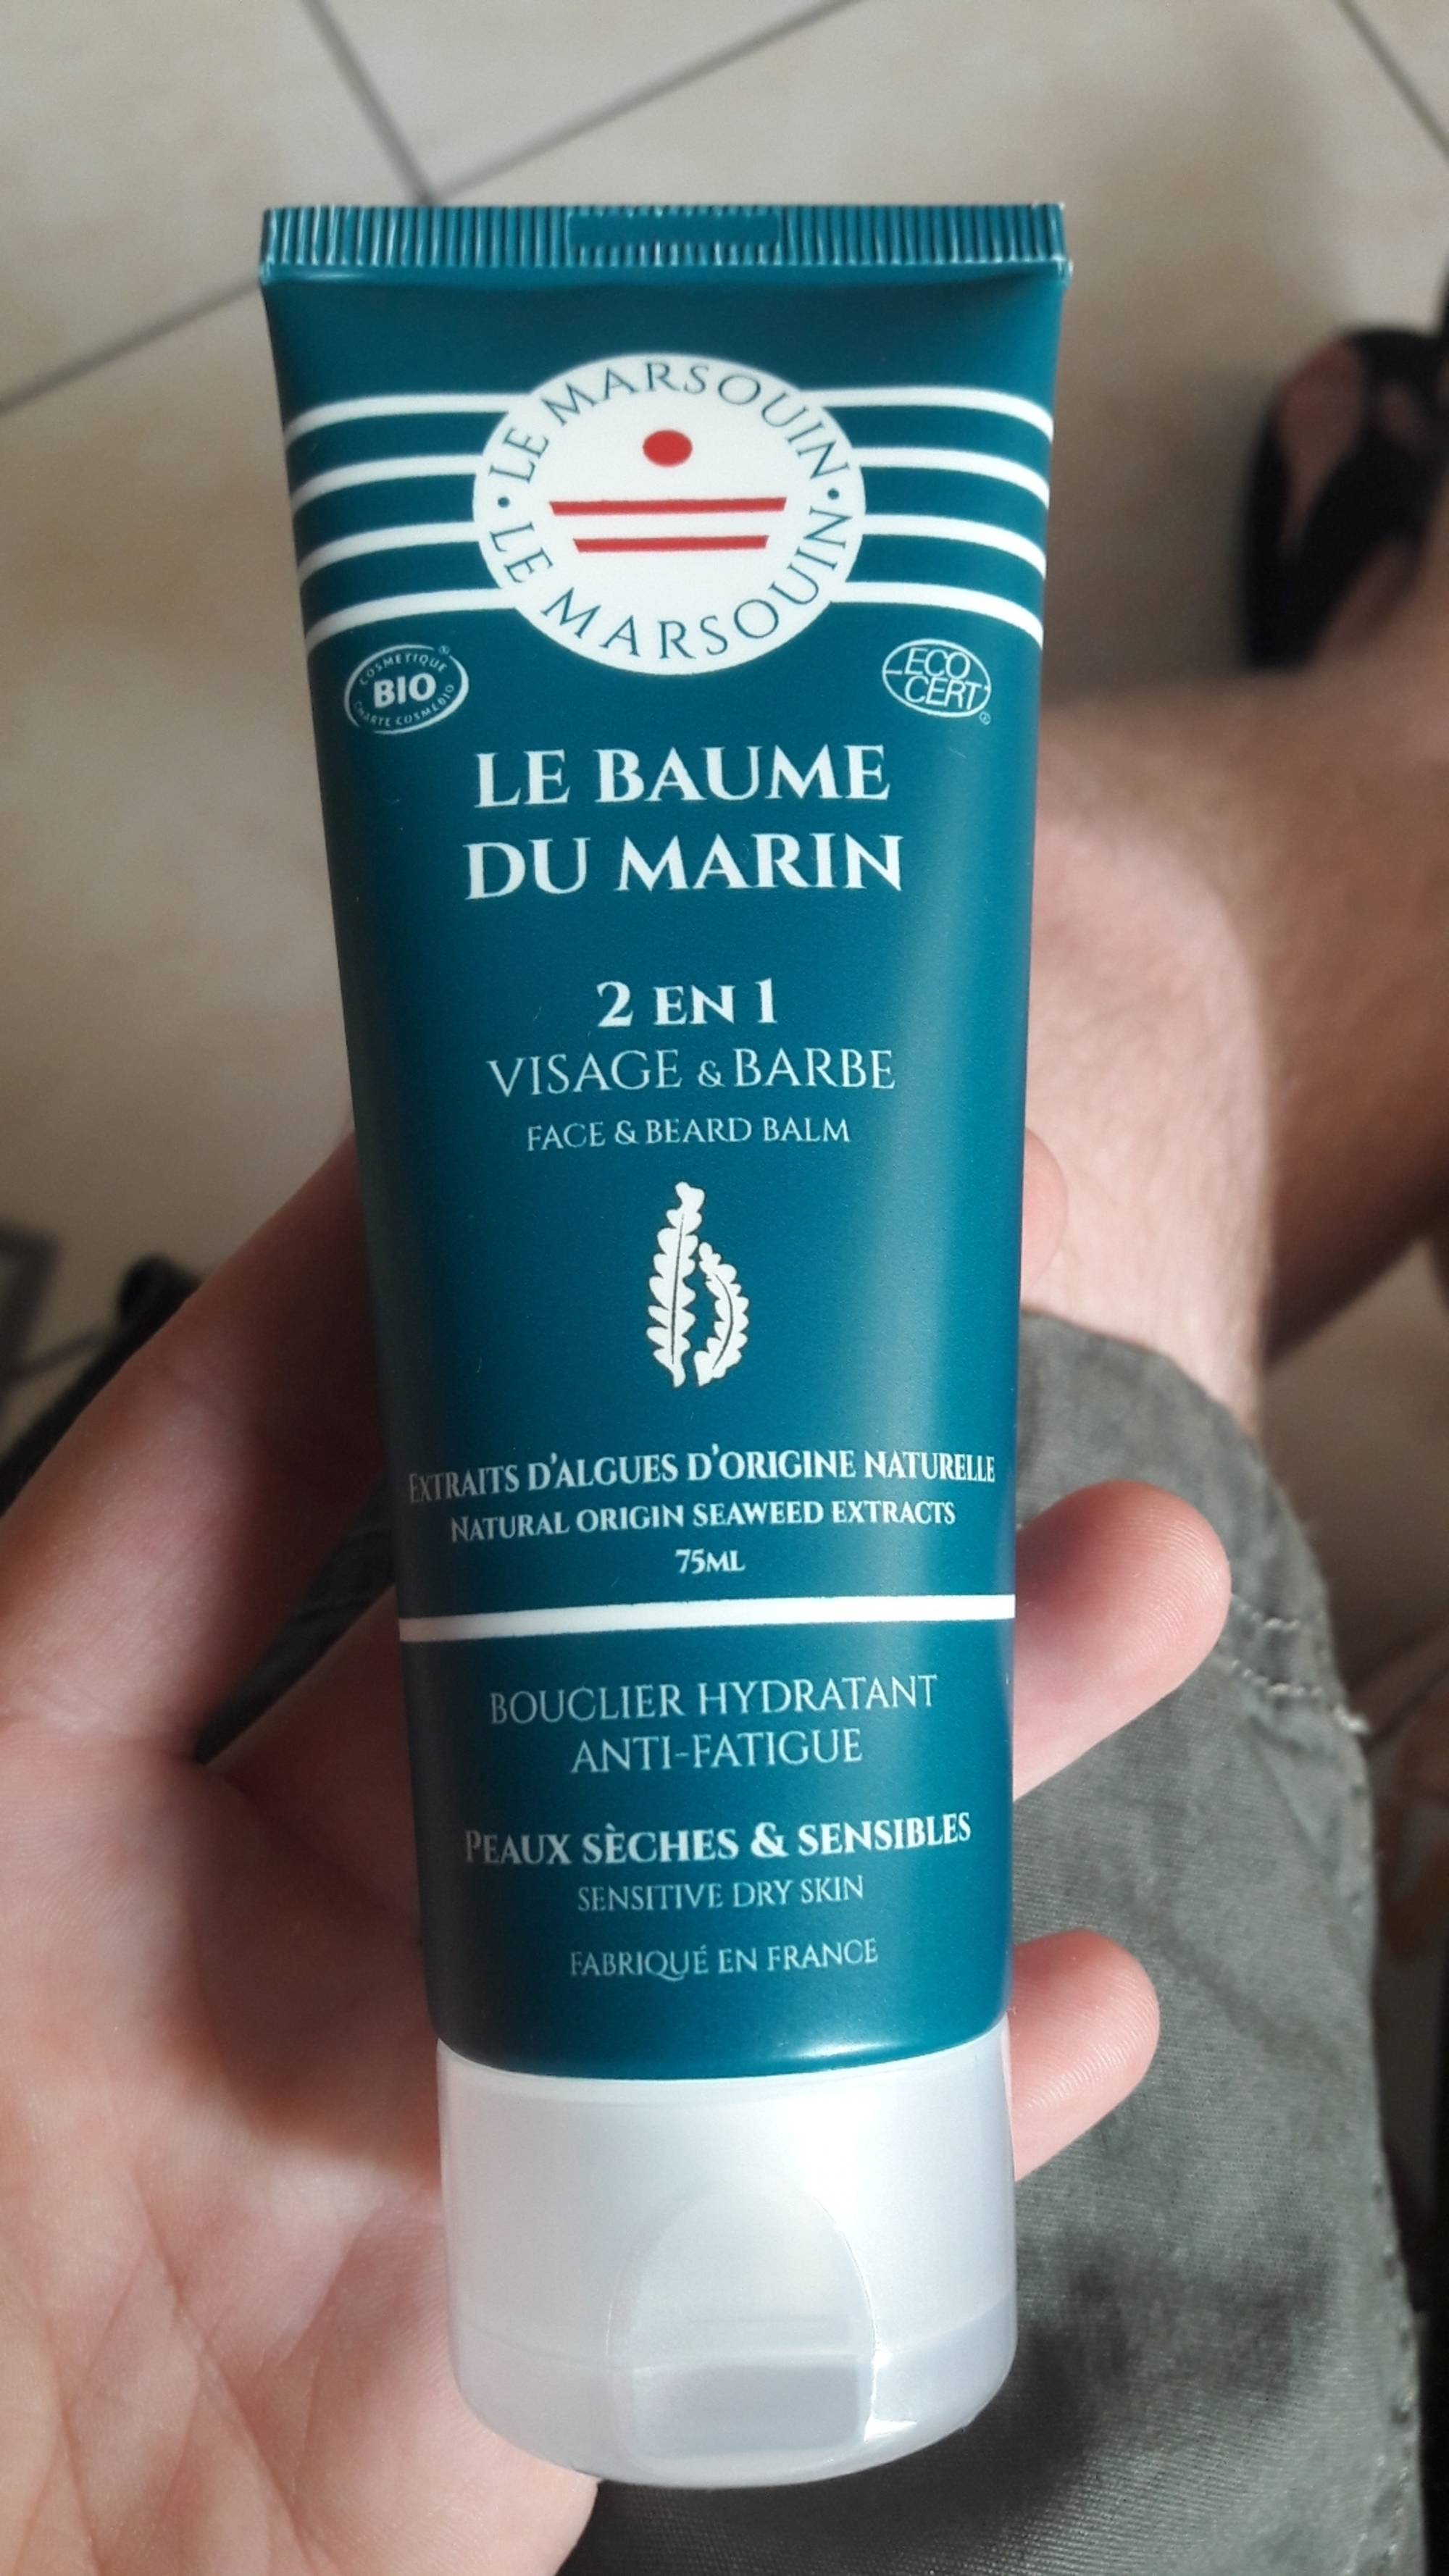 LE MARSOUIN - Le baume du marin 2 en 1 visage & barbe 